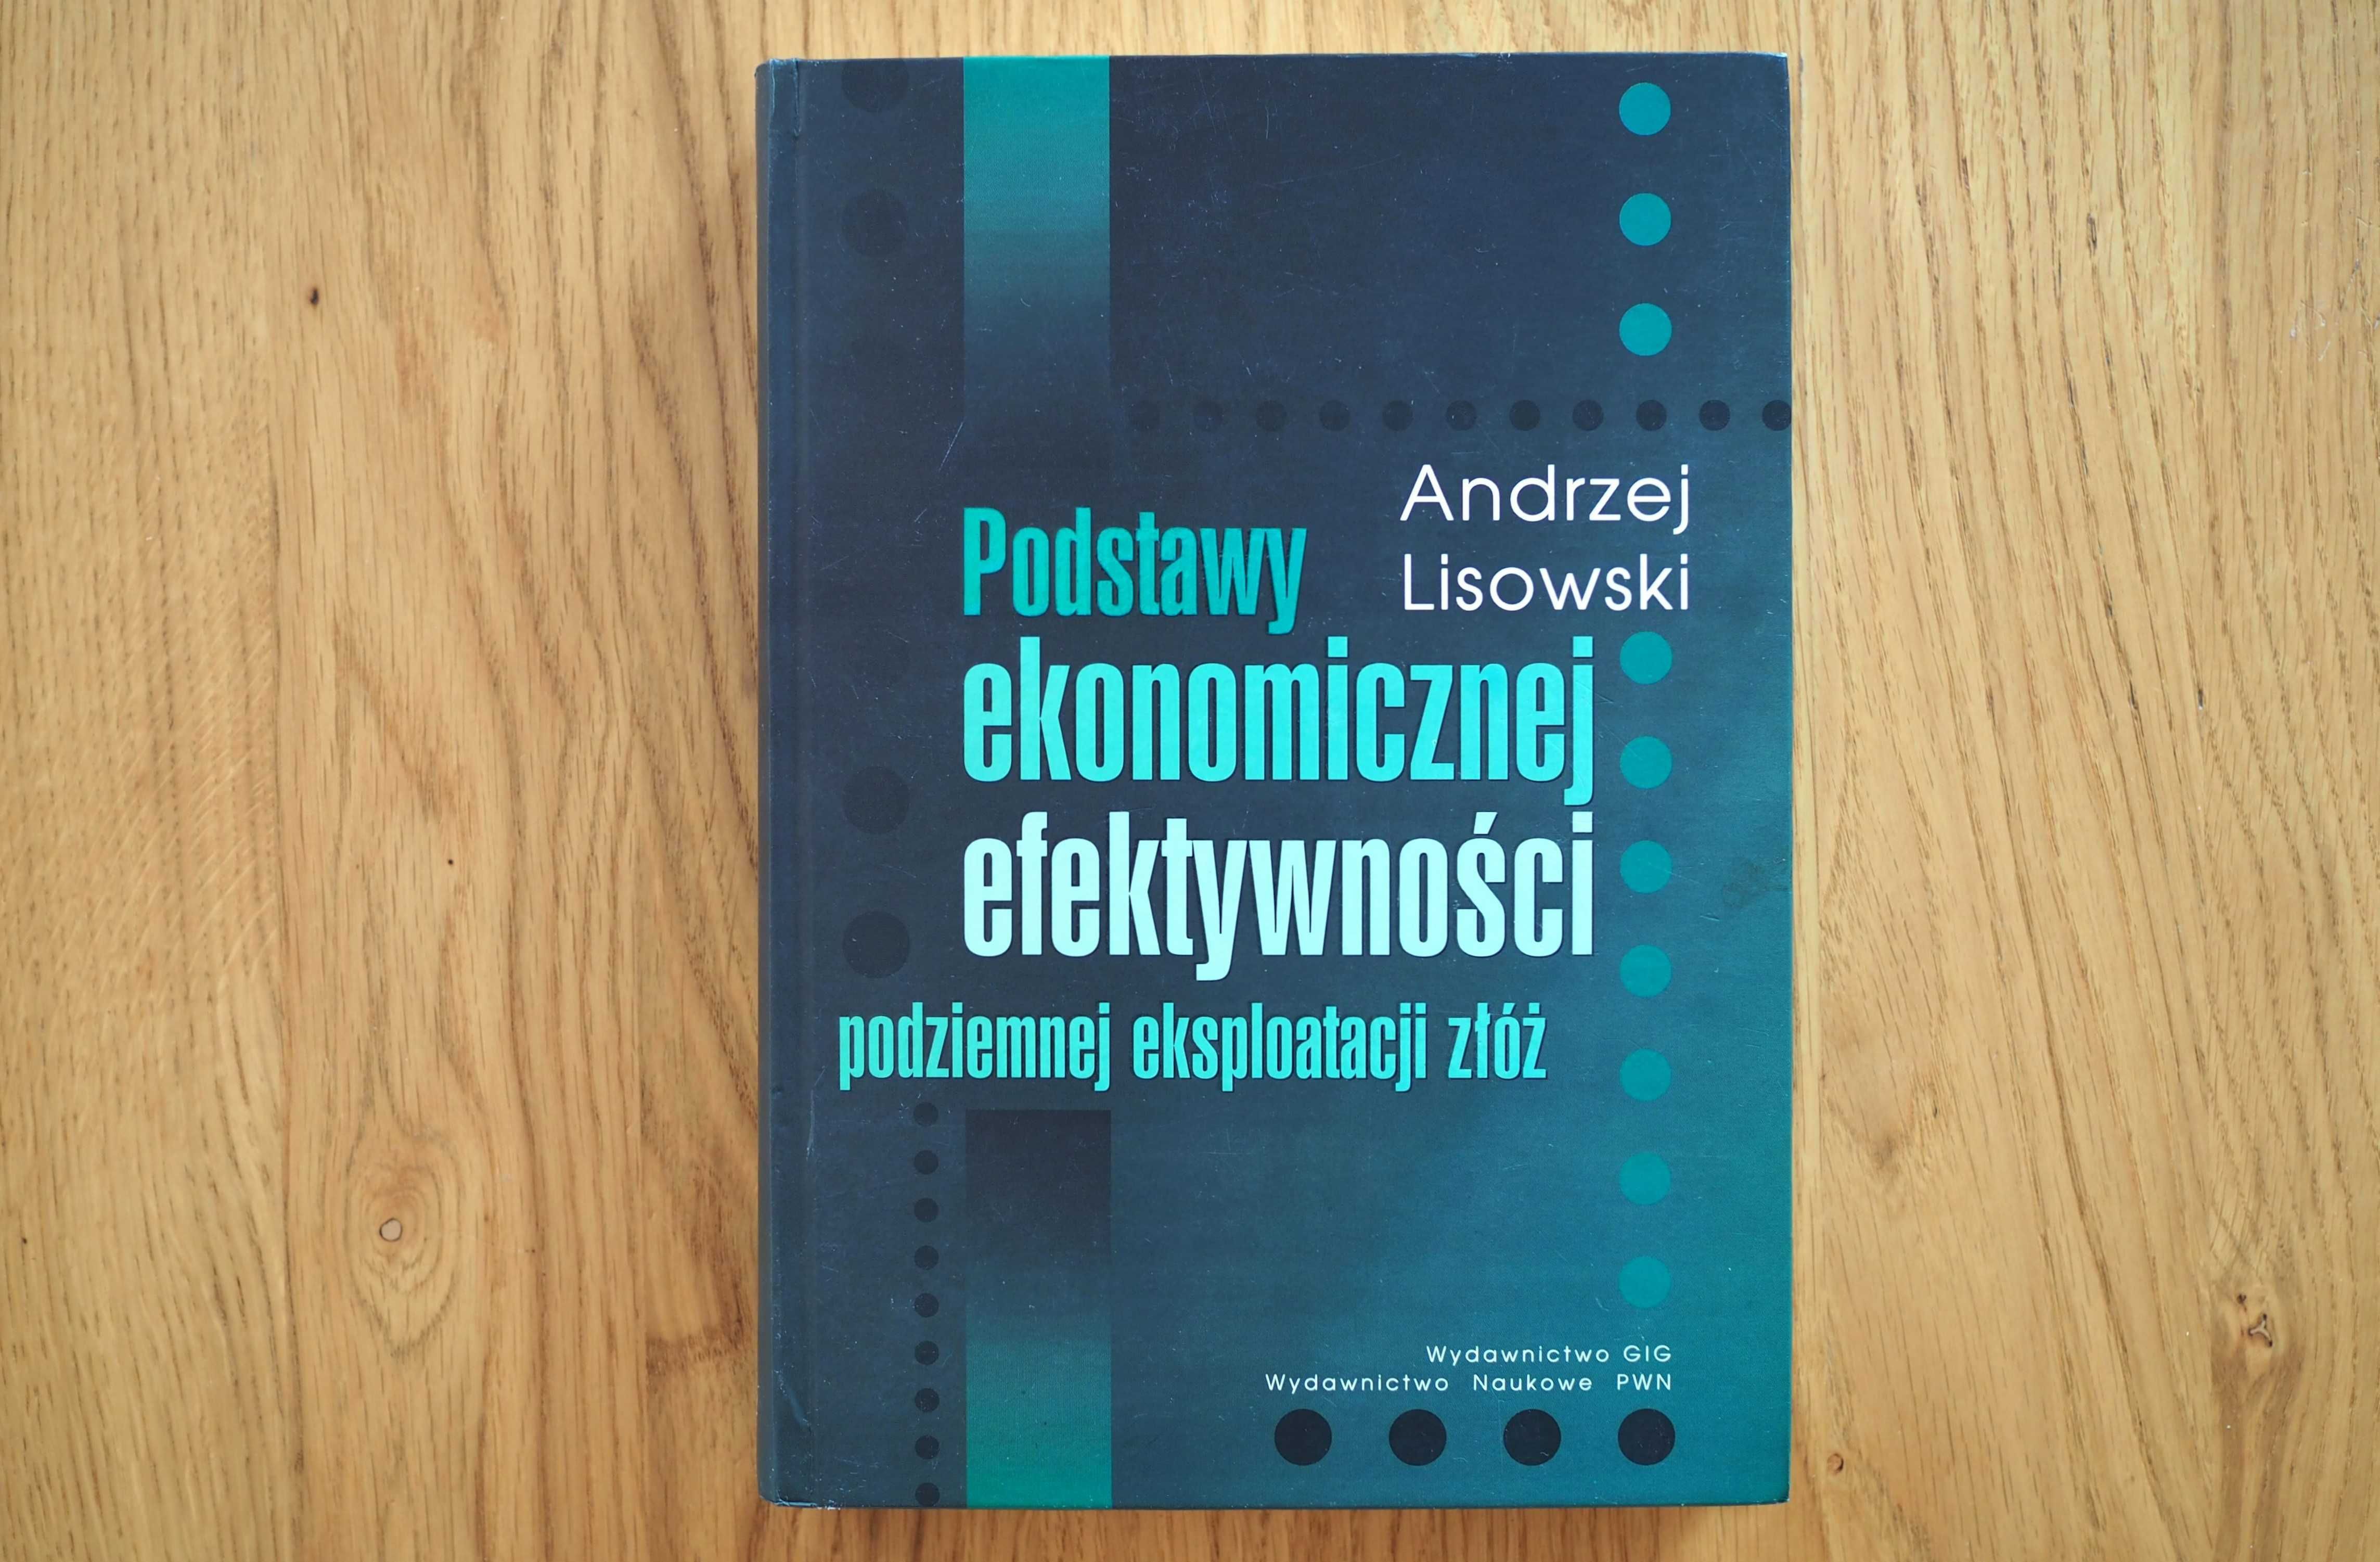 Andrzej Lisowski Podstawy Ekonomicznej Efektywności